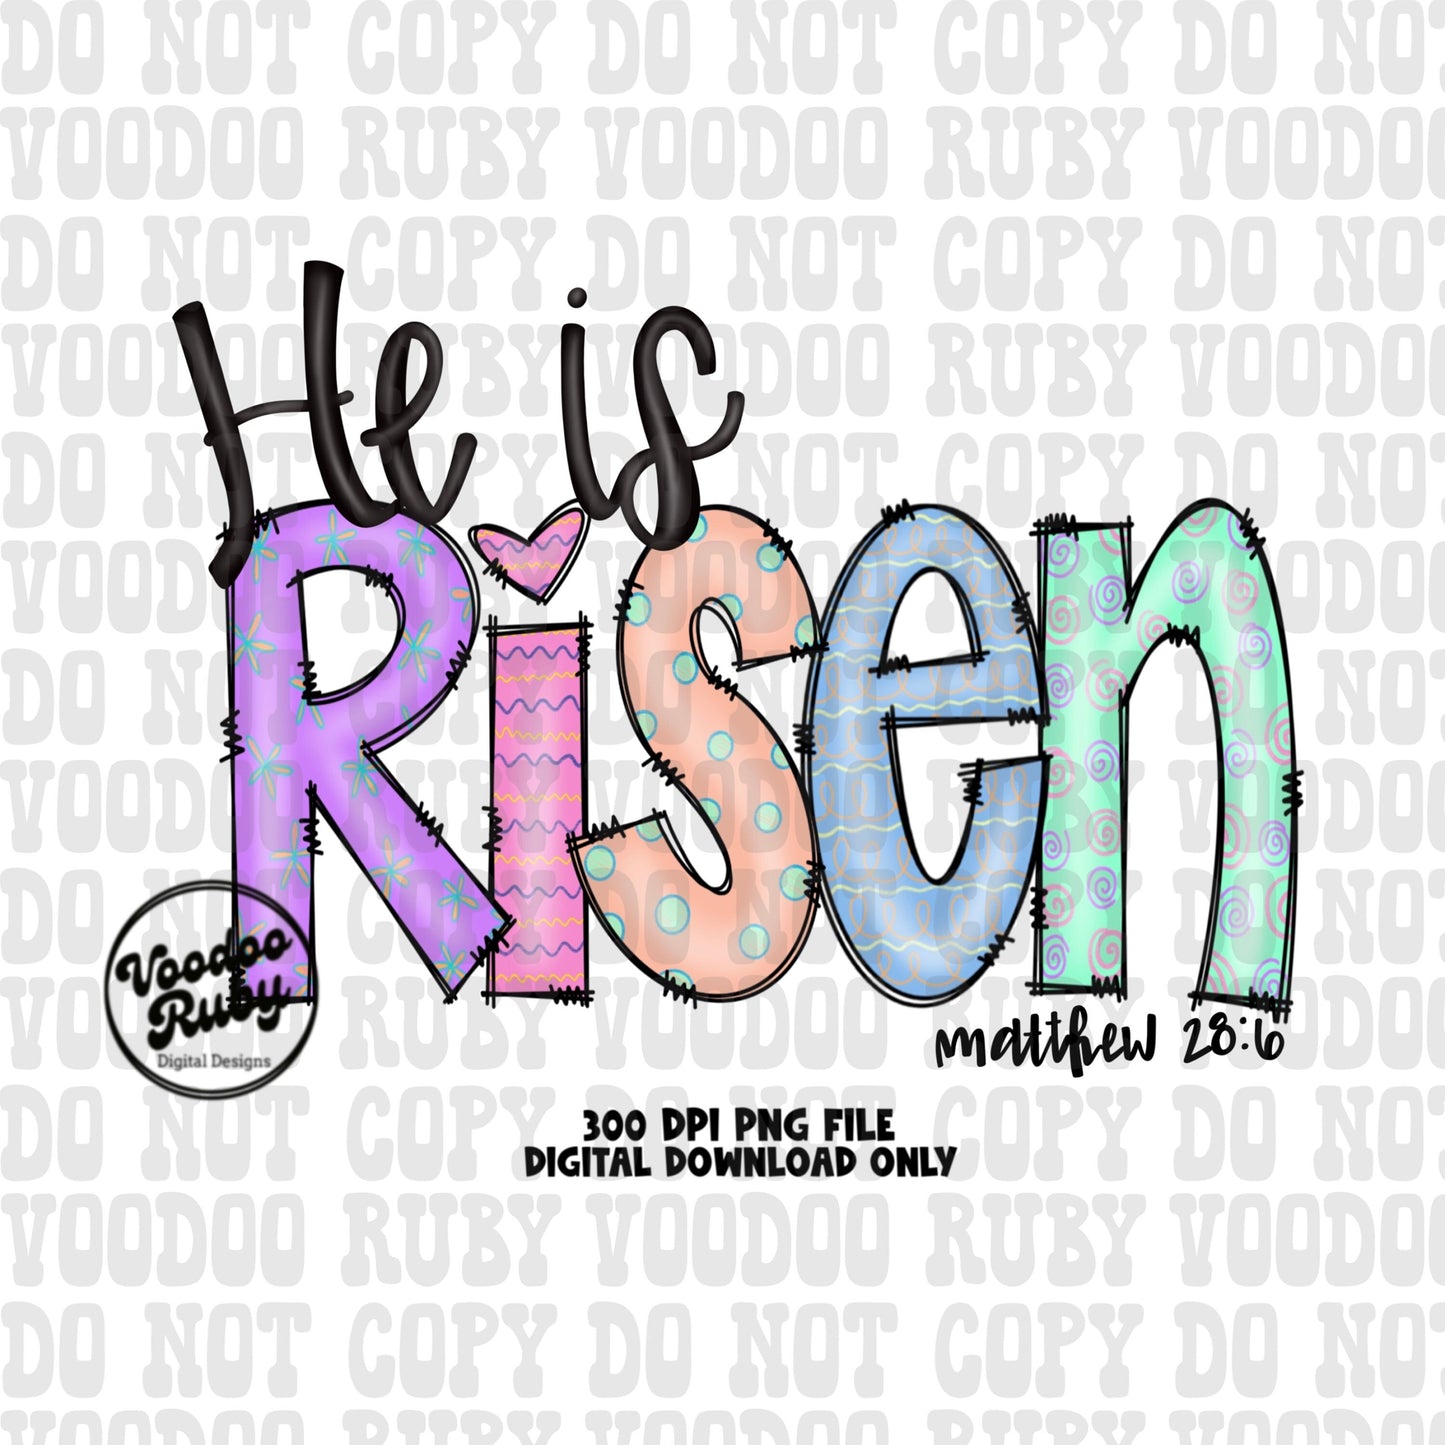 Risen PNG Design Easter PNG He Is Risen Sublimation Hand Drawn Digital Download DTF Printable Matthew 28:6 Clip Art Jesus png Easter Dtf